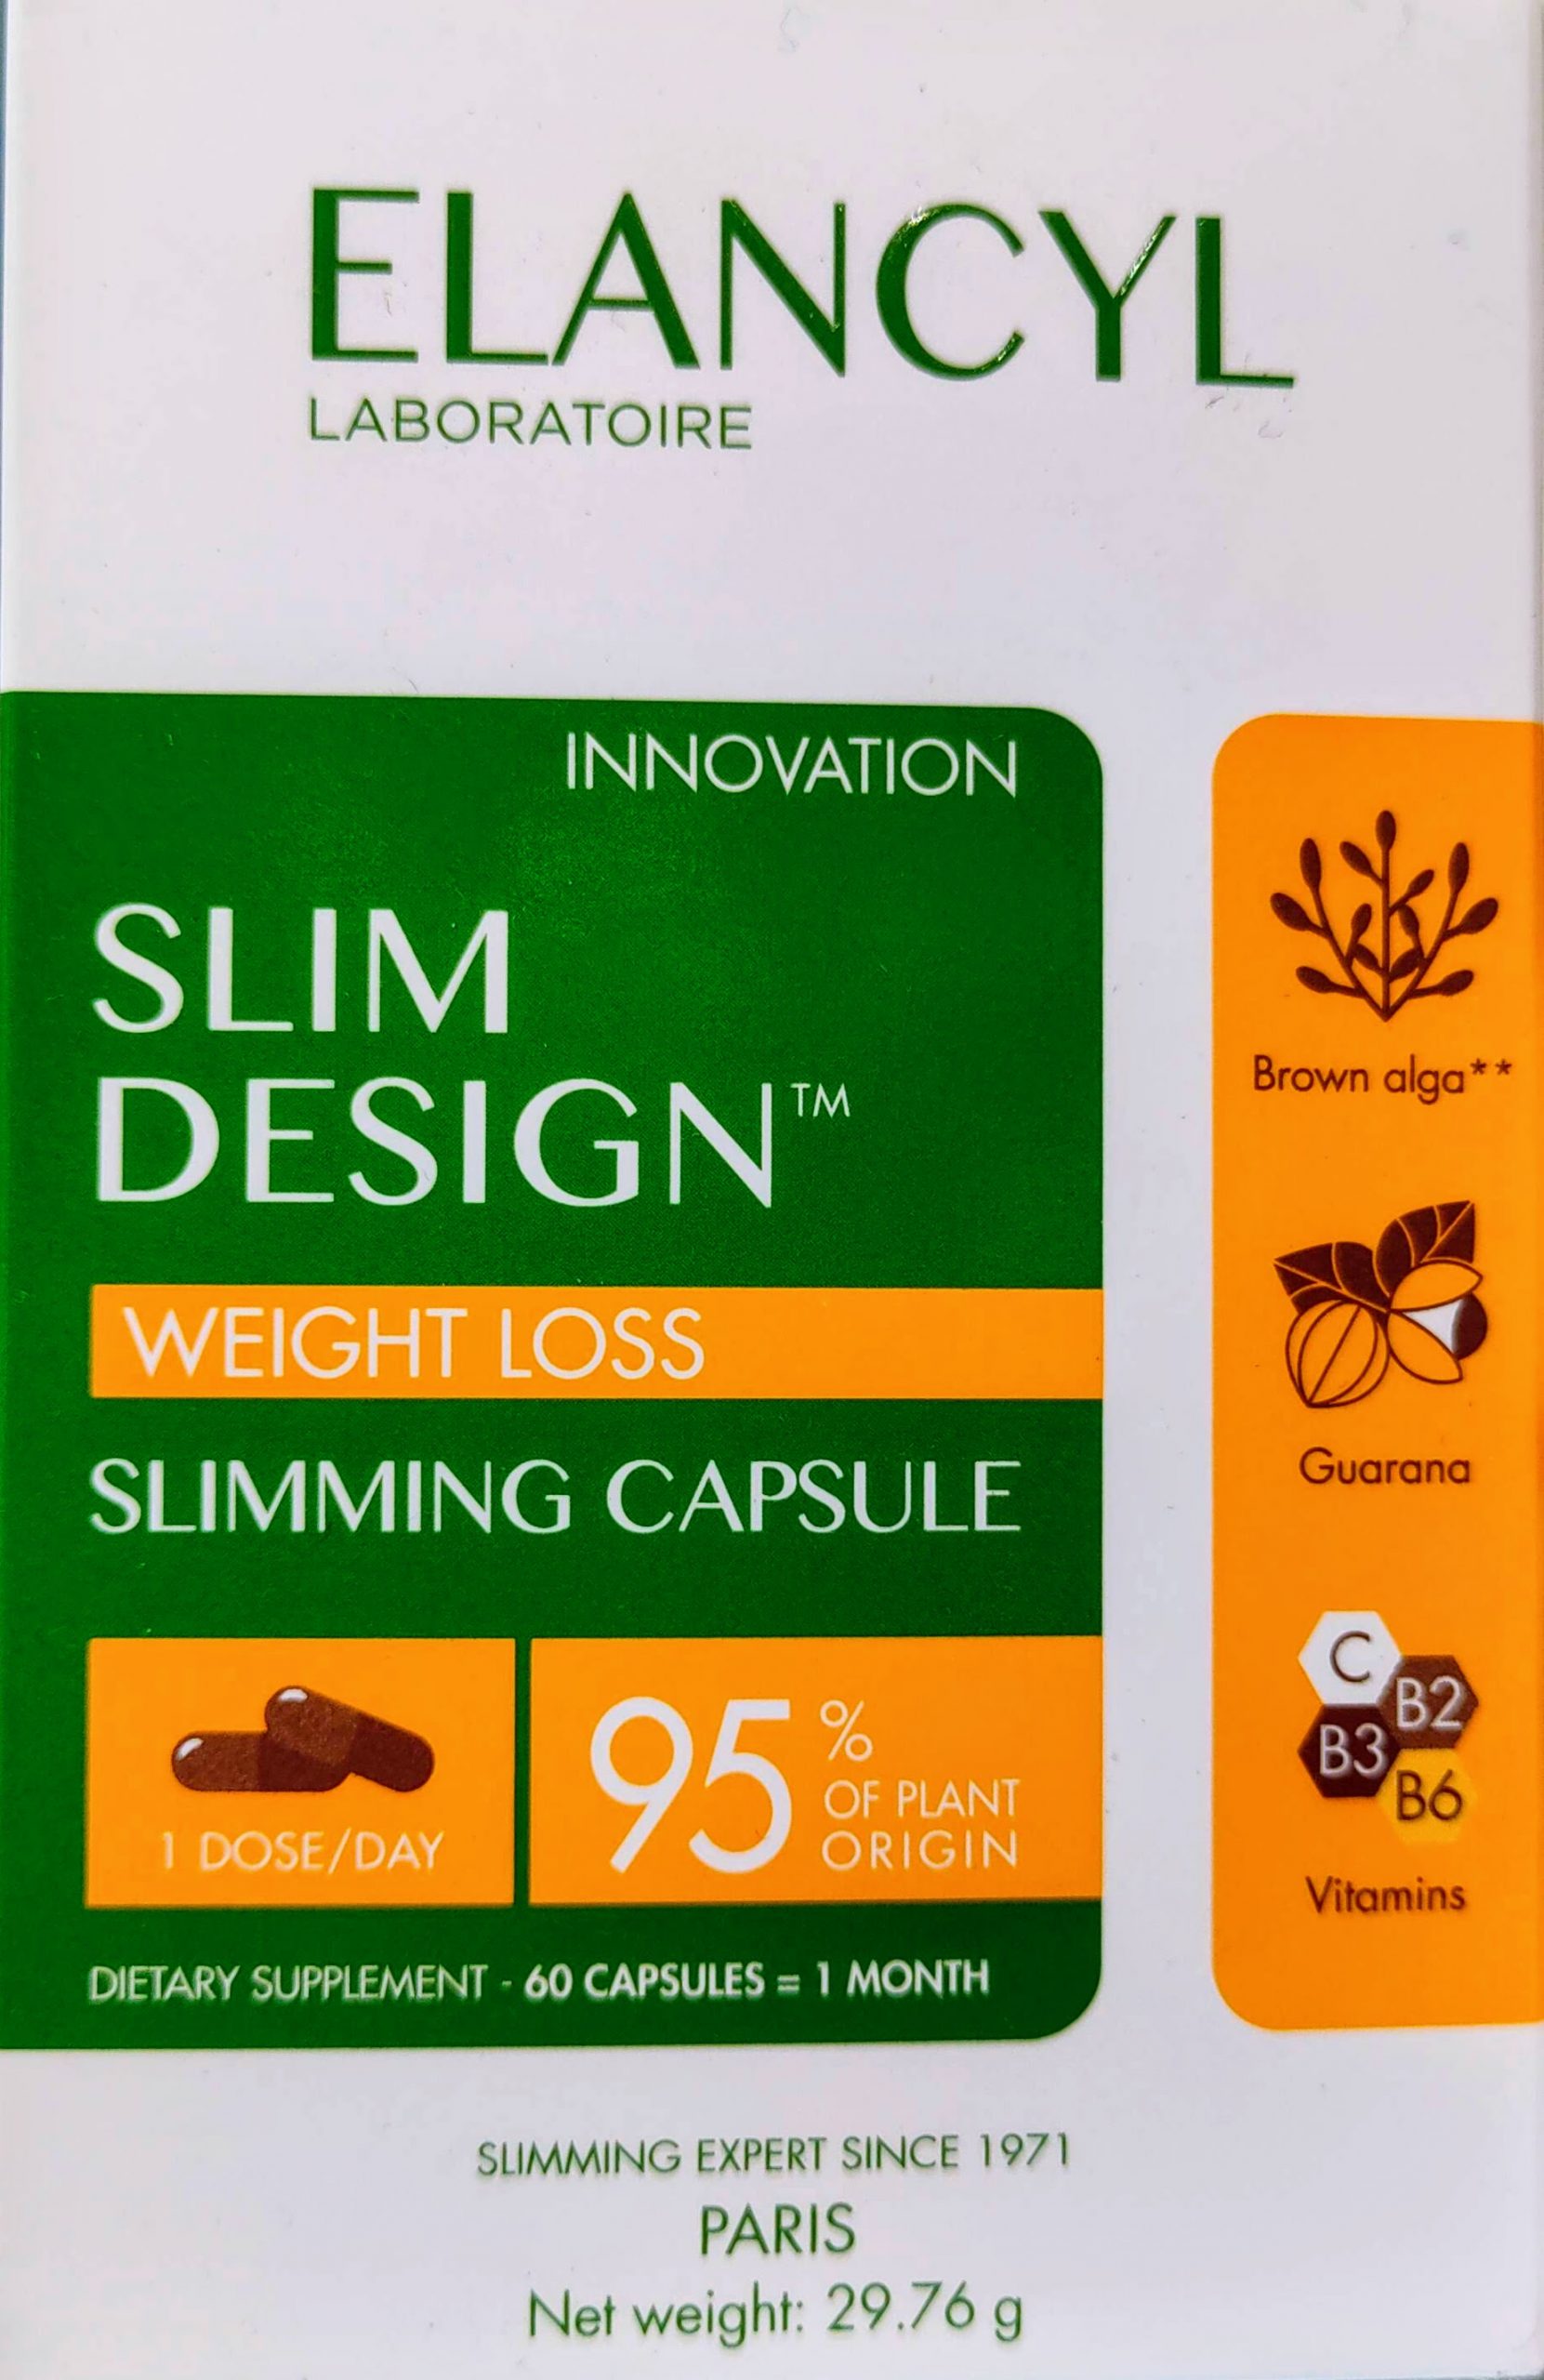 Elancyl Slim Design perdida de peso 60 capsulas Adecuado para facilitar la pérdida de peso gracias a sus activos naturales y su composición del 95% de origen vegetal . Ideal además de la crema Elancyl Slim Design.